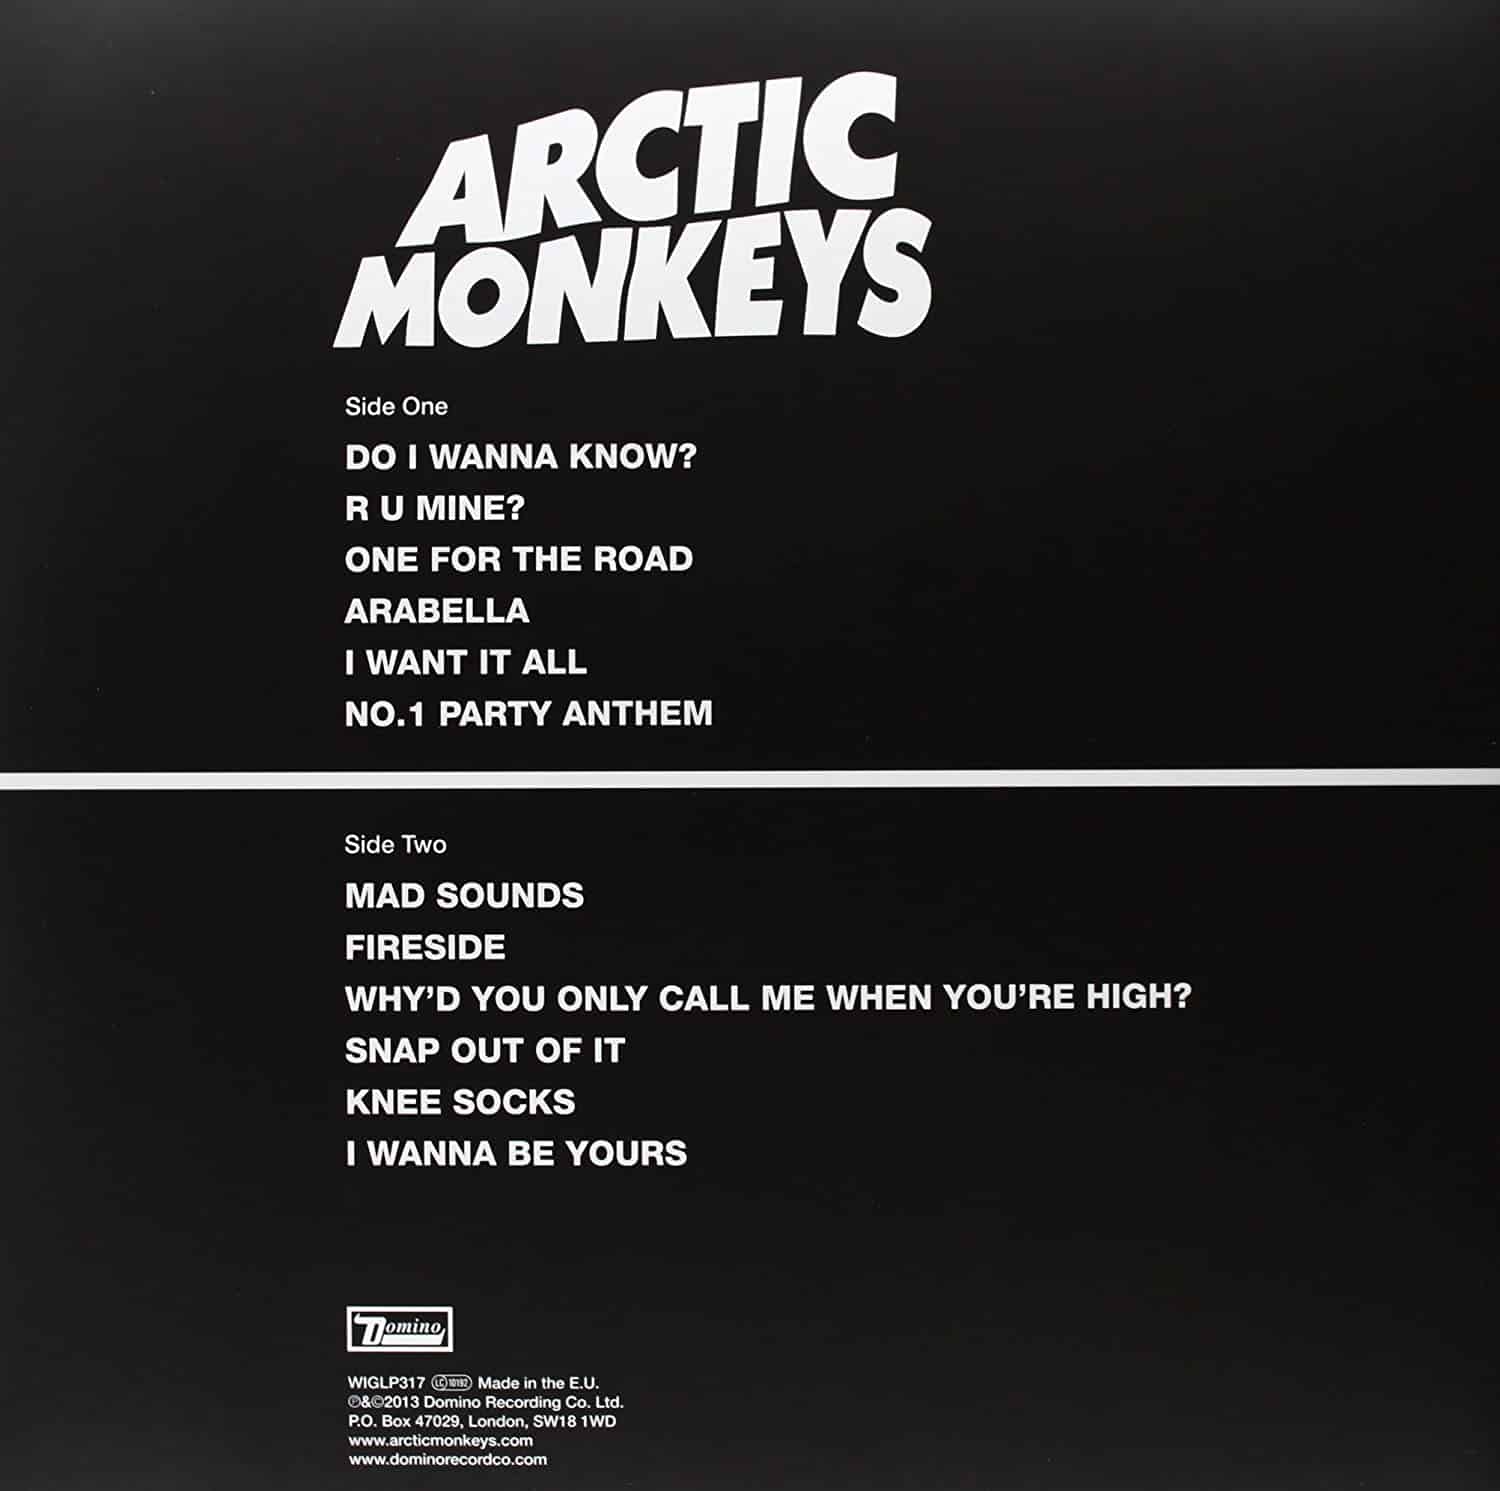 Arctic-Monkeys-AM-vinyl-LP-record-album-back